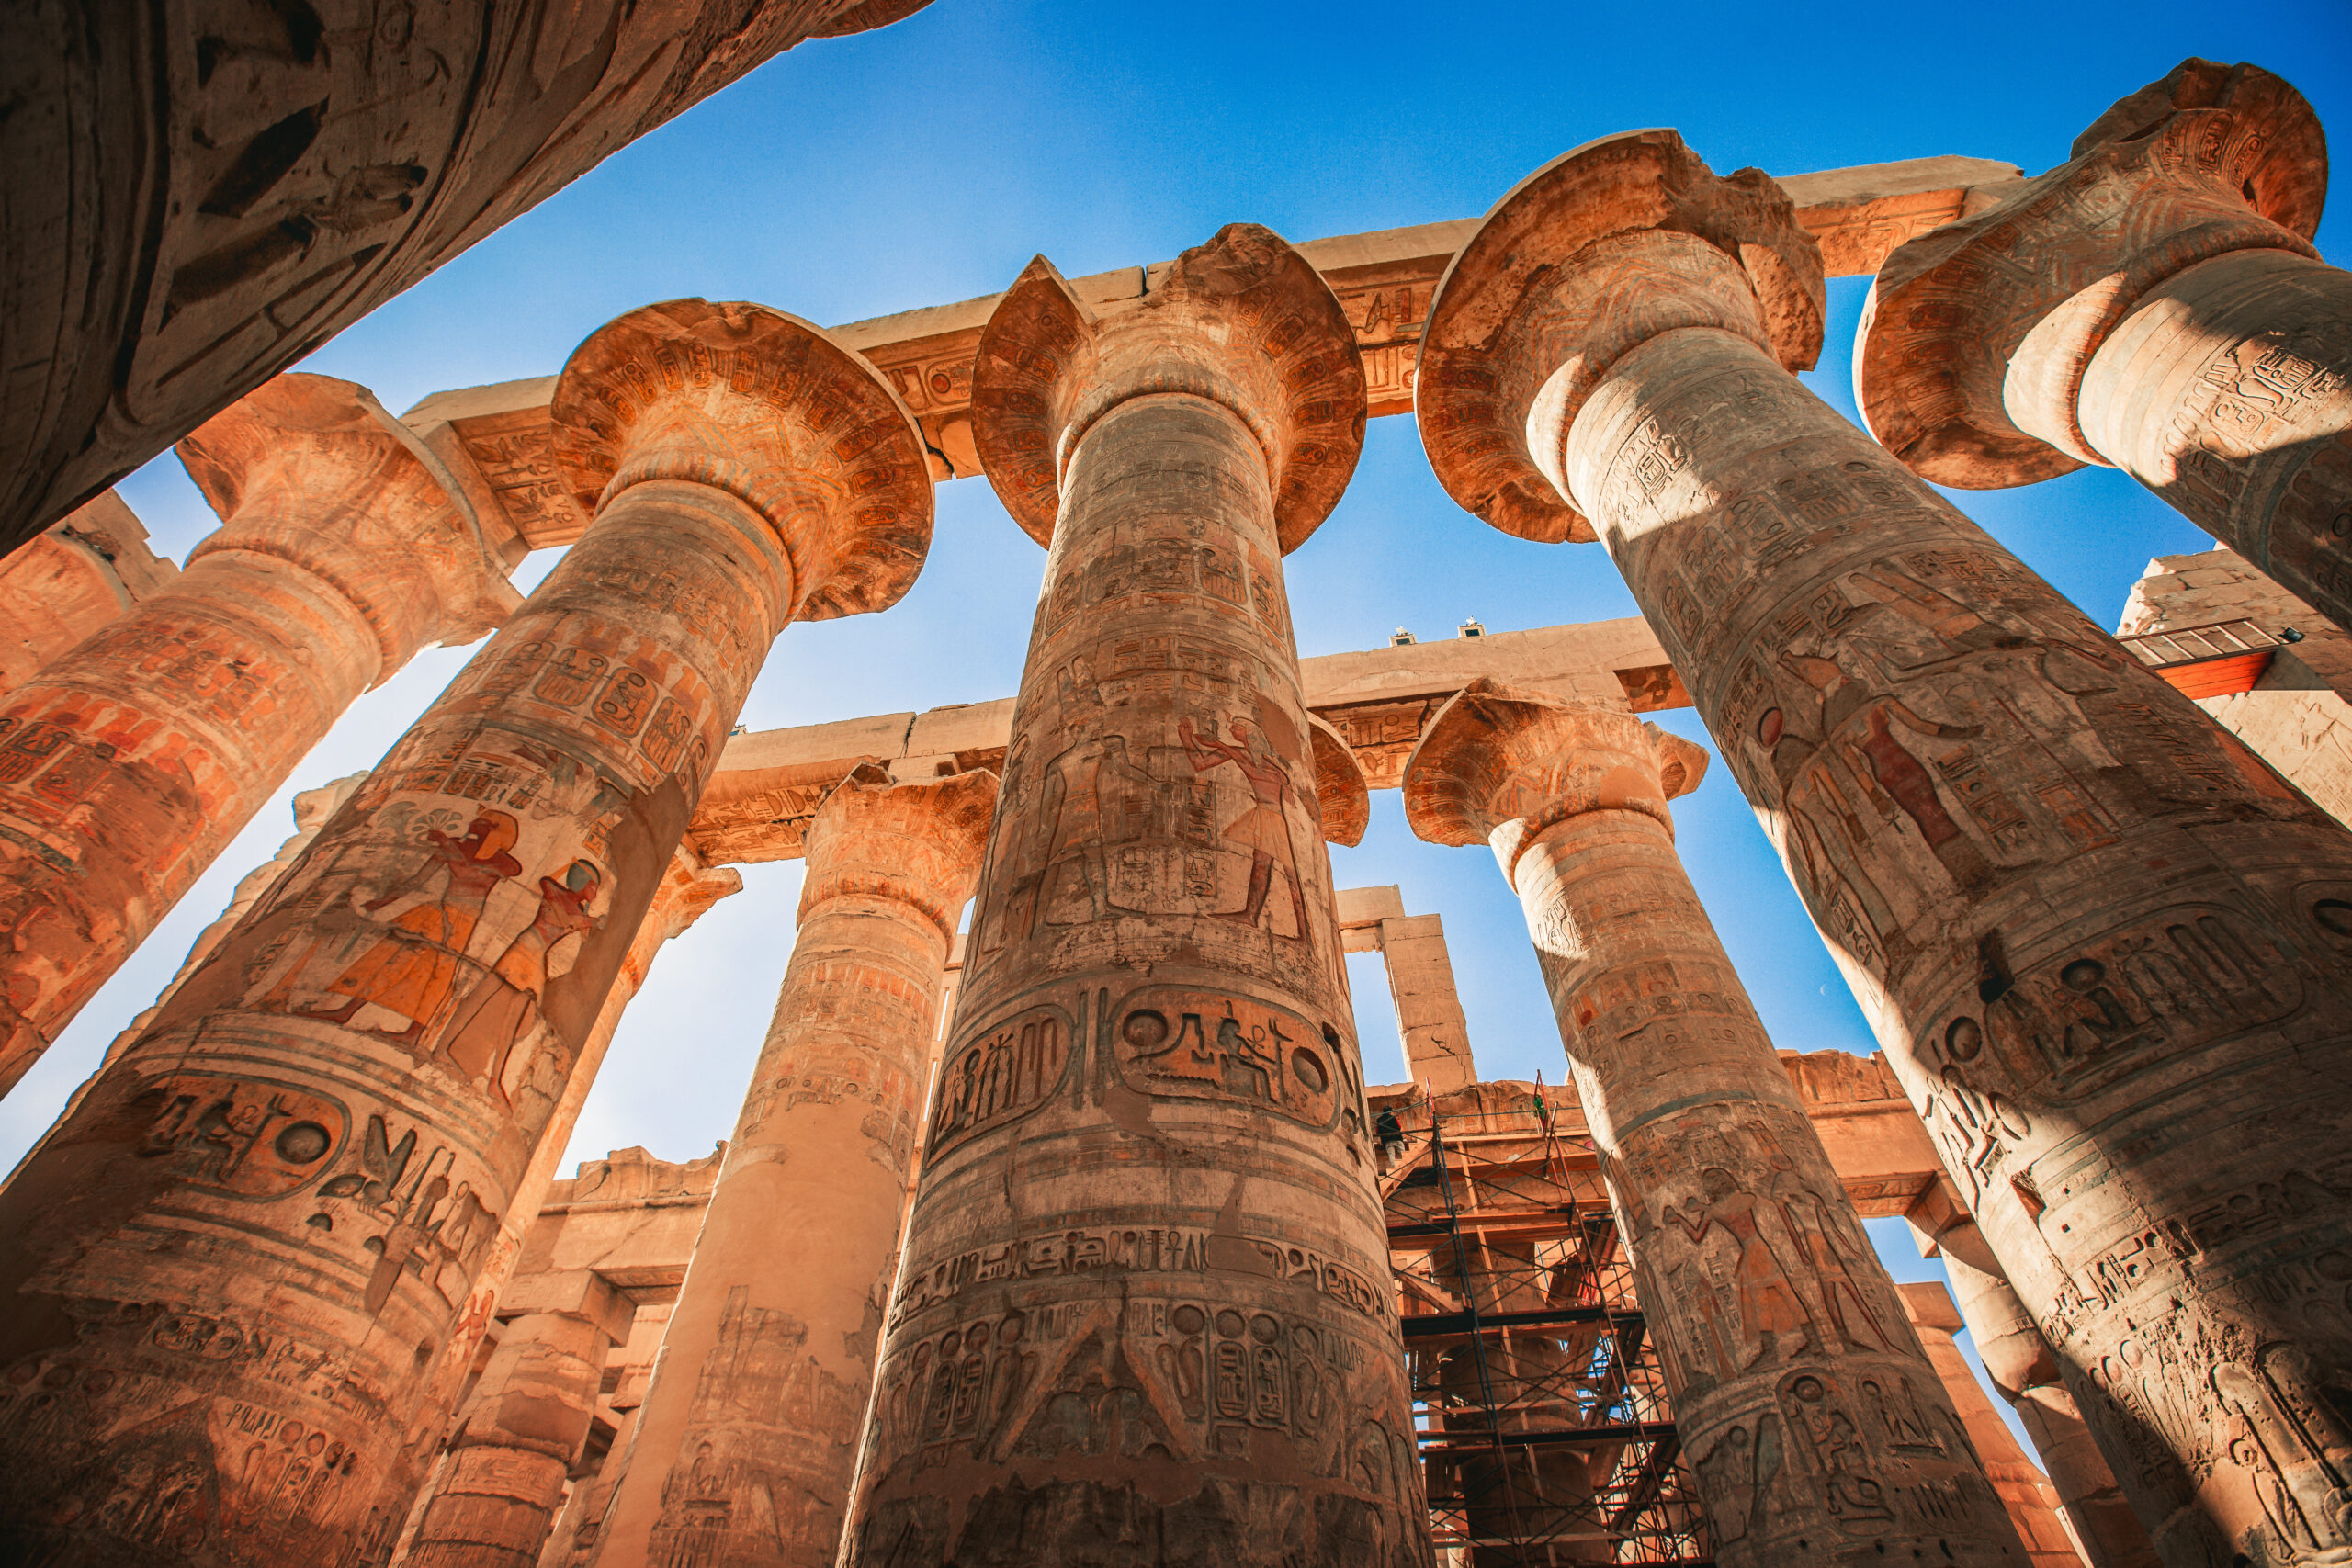 Pillars in Karnak Temple in Luxor, Egypt